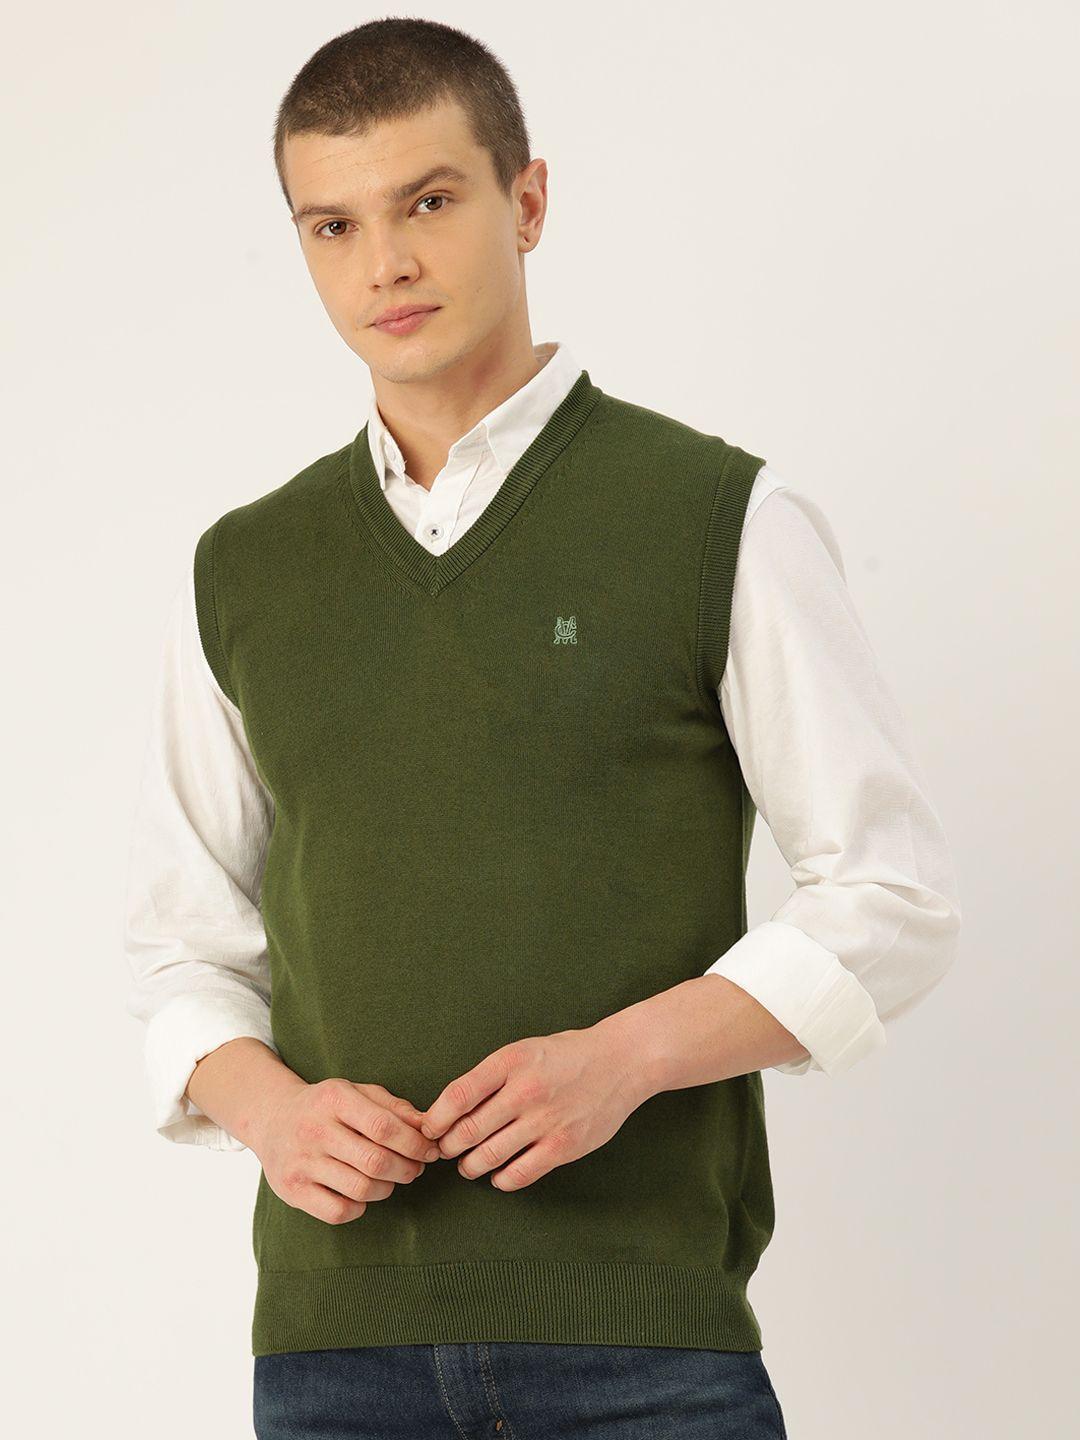 monte carlo cotton sweater vest